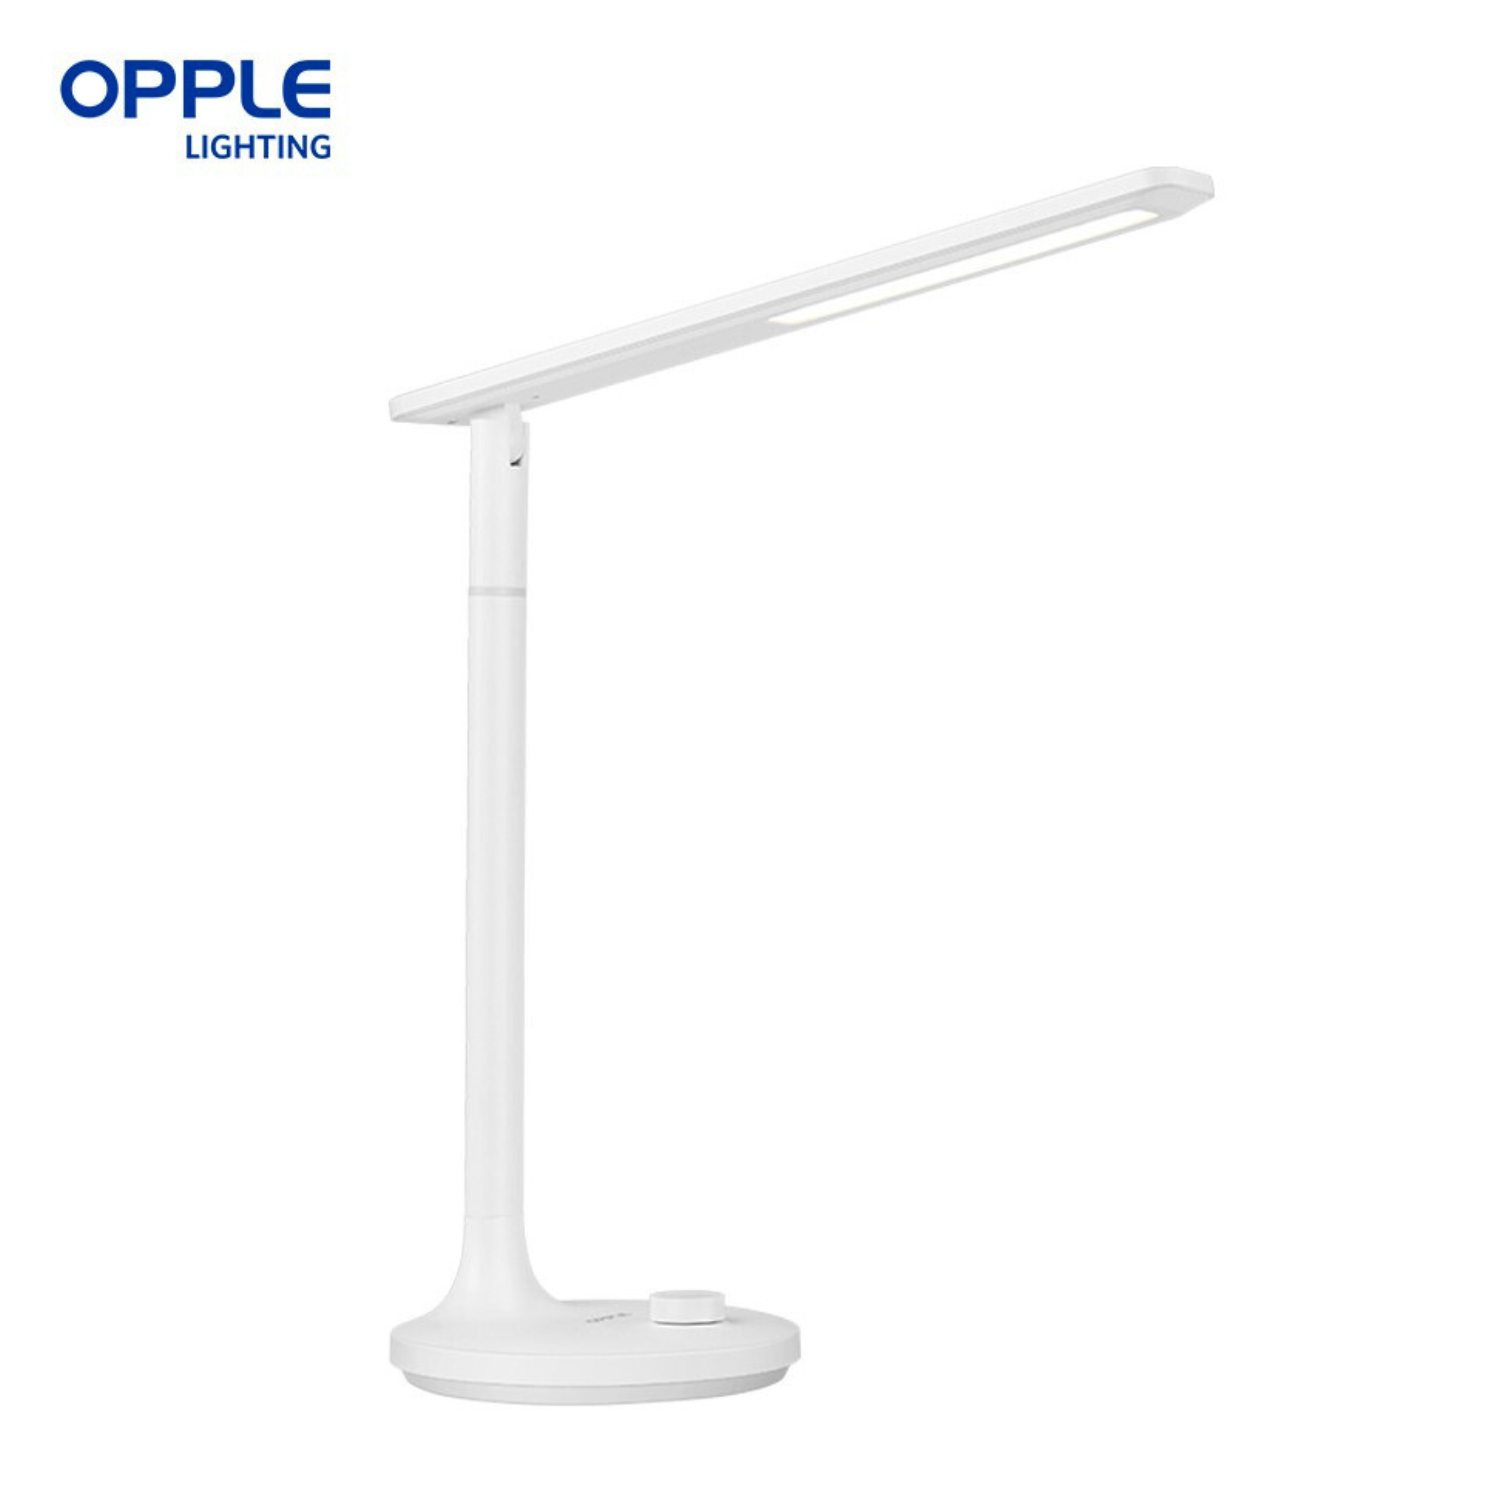 OPPLE RECHARGERABLE LED TABLE LIGHT [OPPLE LIGHT]